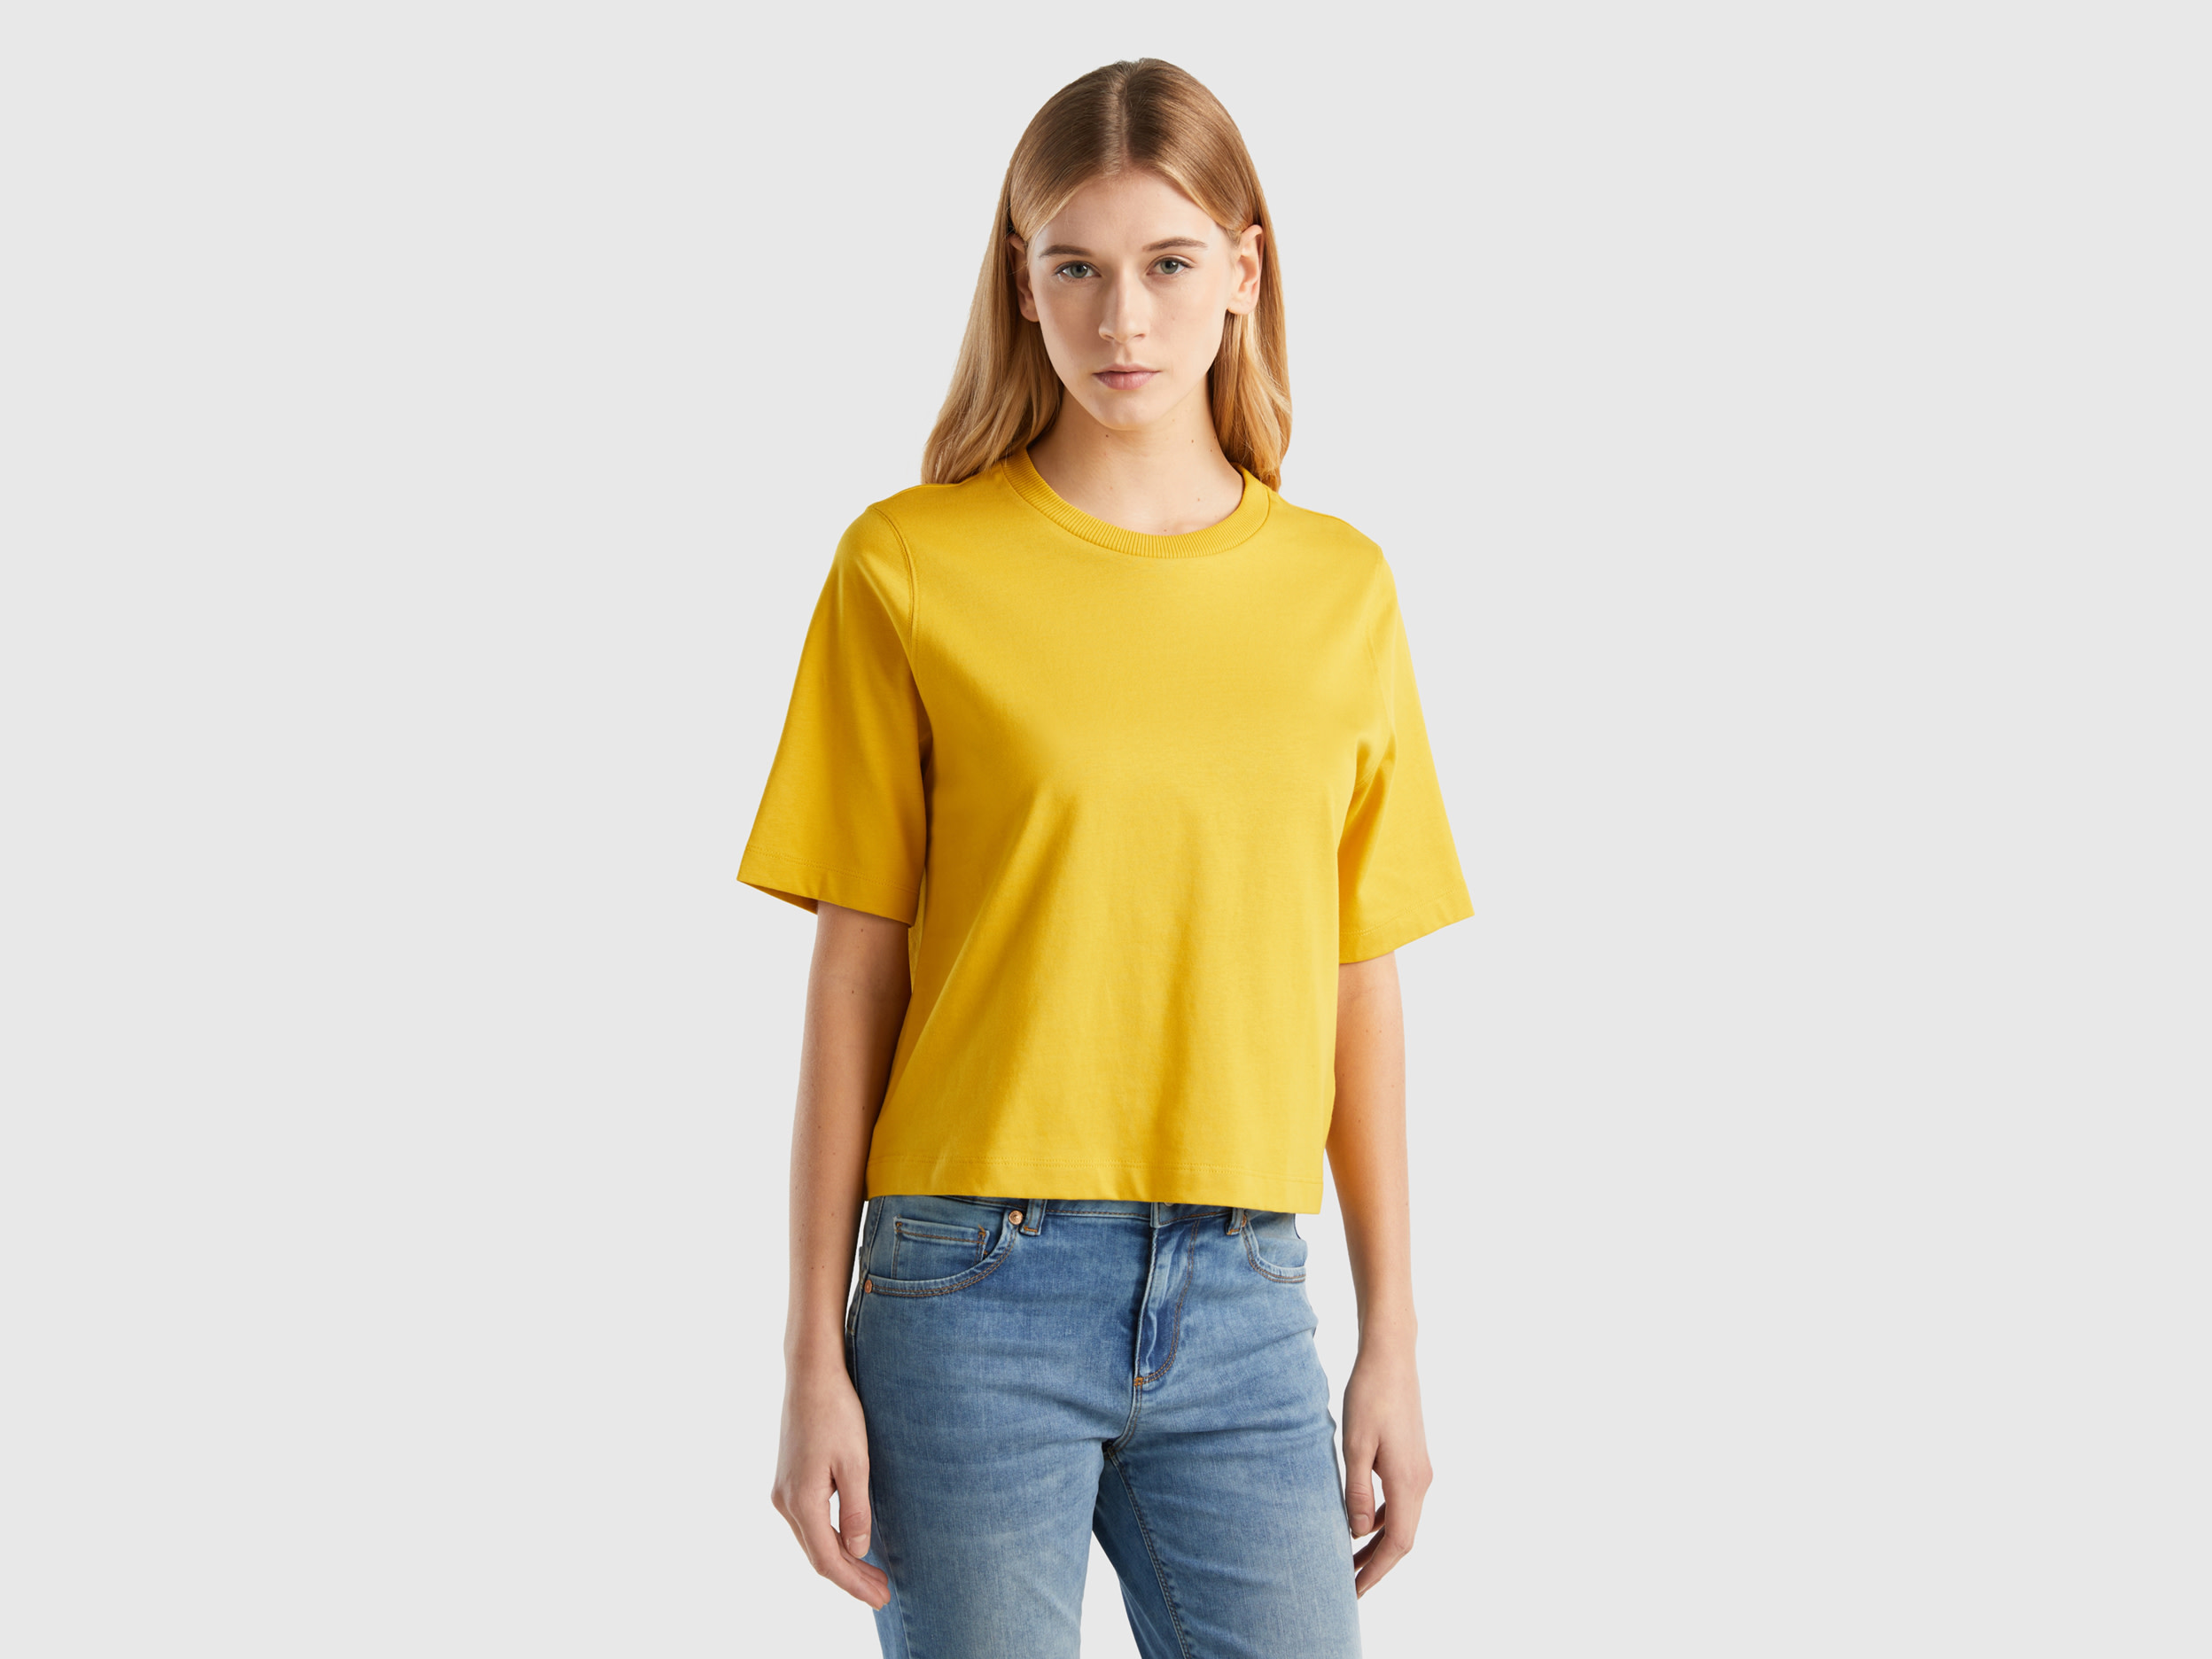 Benetton, 100% Cotton Boxy Fit T-shirt, size XS, Yellow, Women